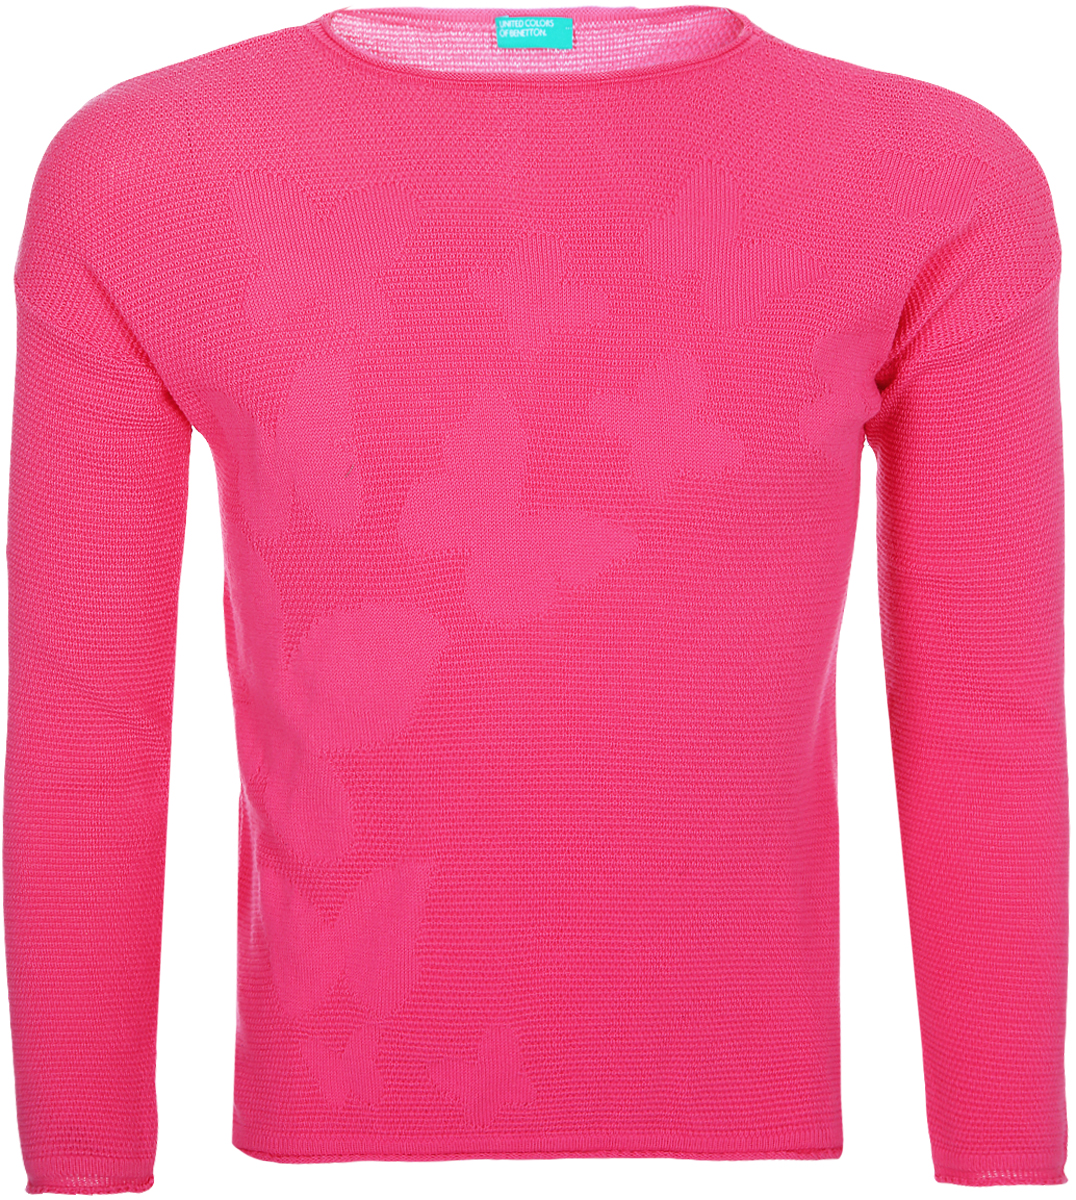 Джемпер для девочки United Colors of Benetton, цвет: ярко-розовый. 1098C1592_901. Размер 130